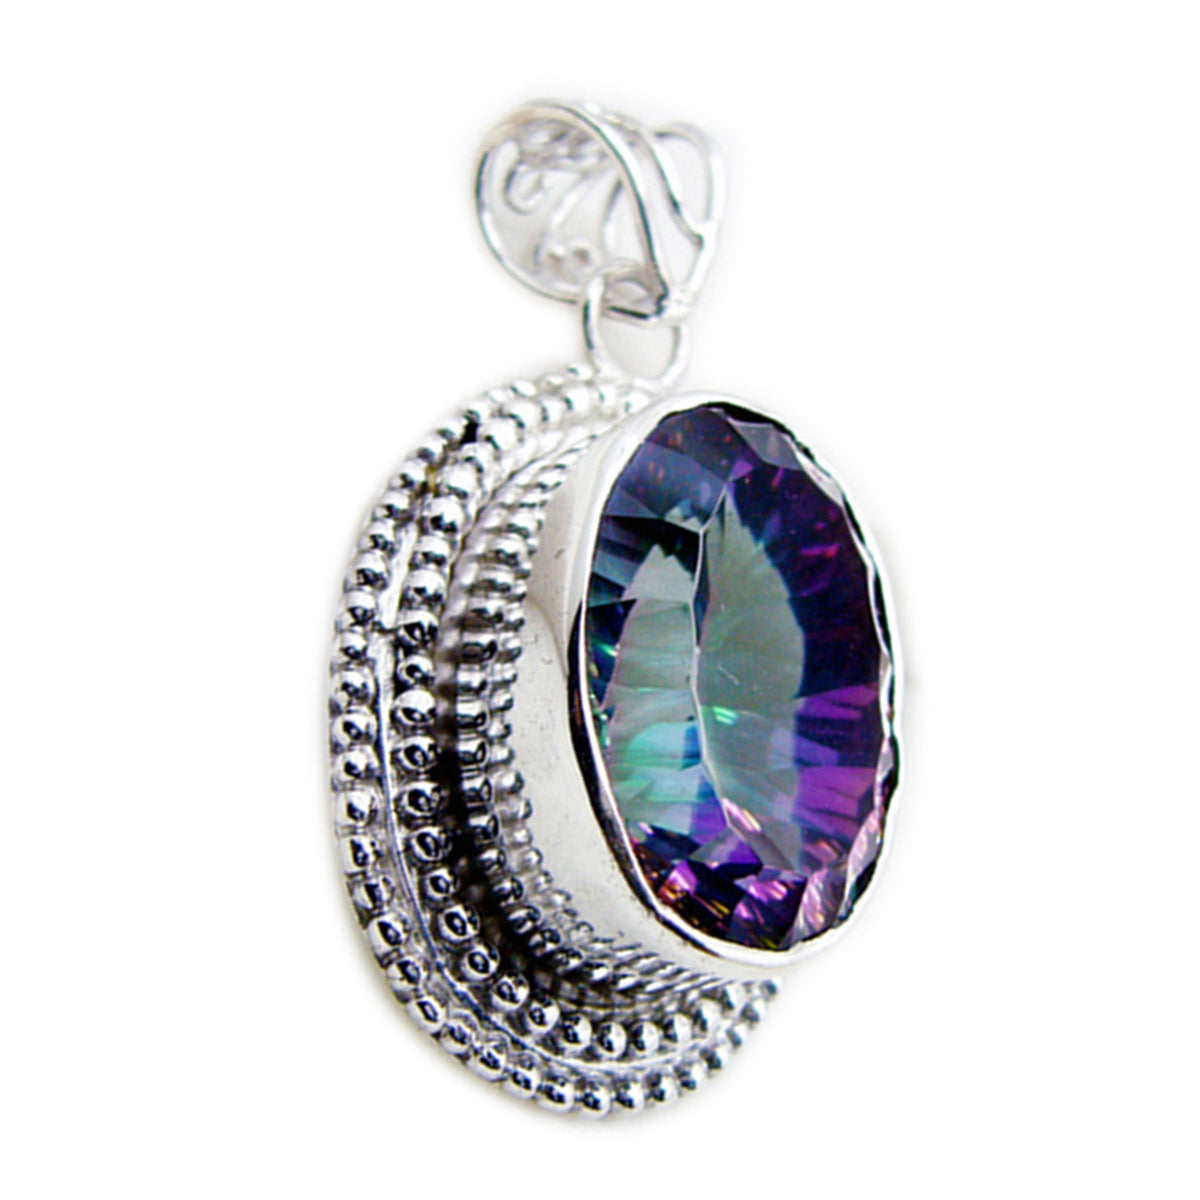 riyo belle gemme ovali sfaccettate multicolore quarzo mistico ciondolo in argento regalo per Santo Stefano